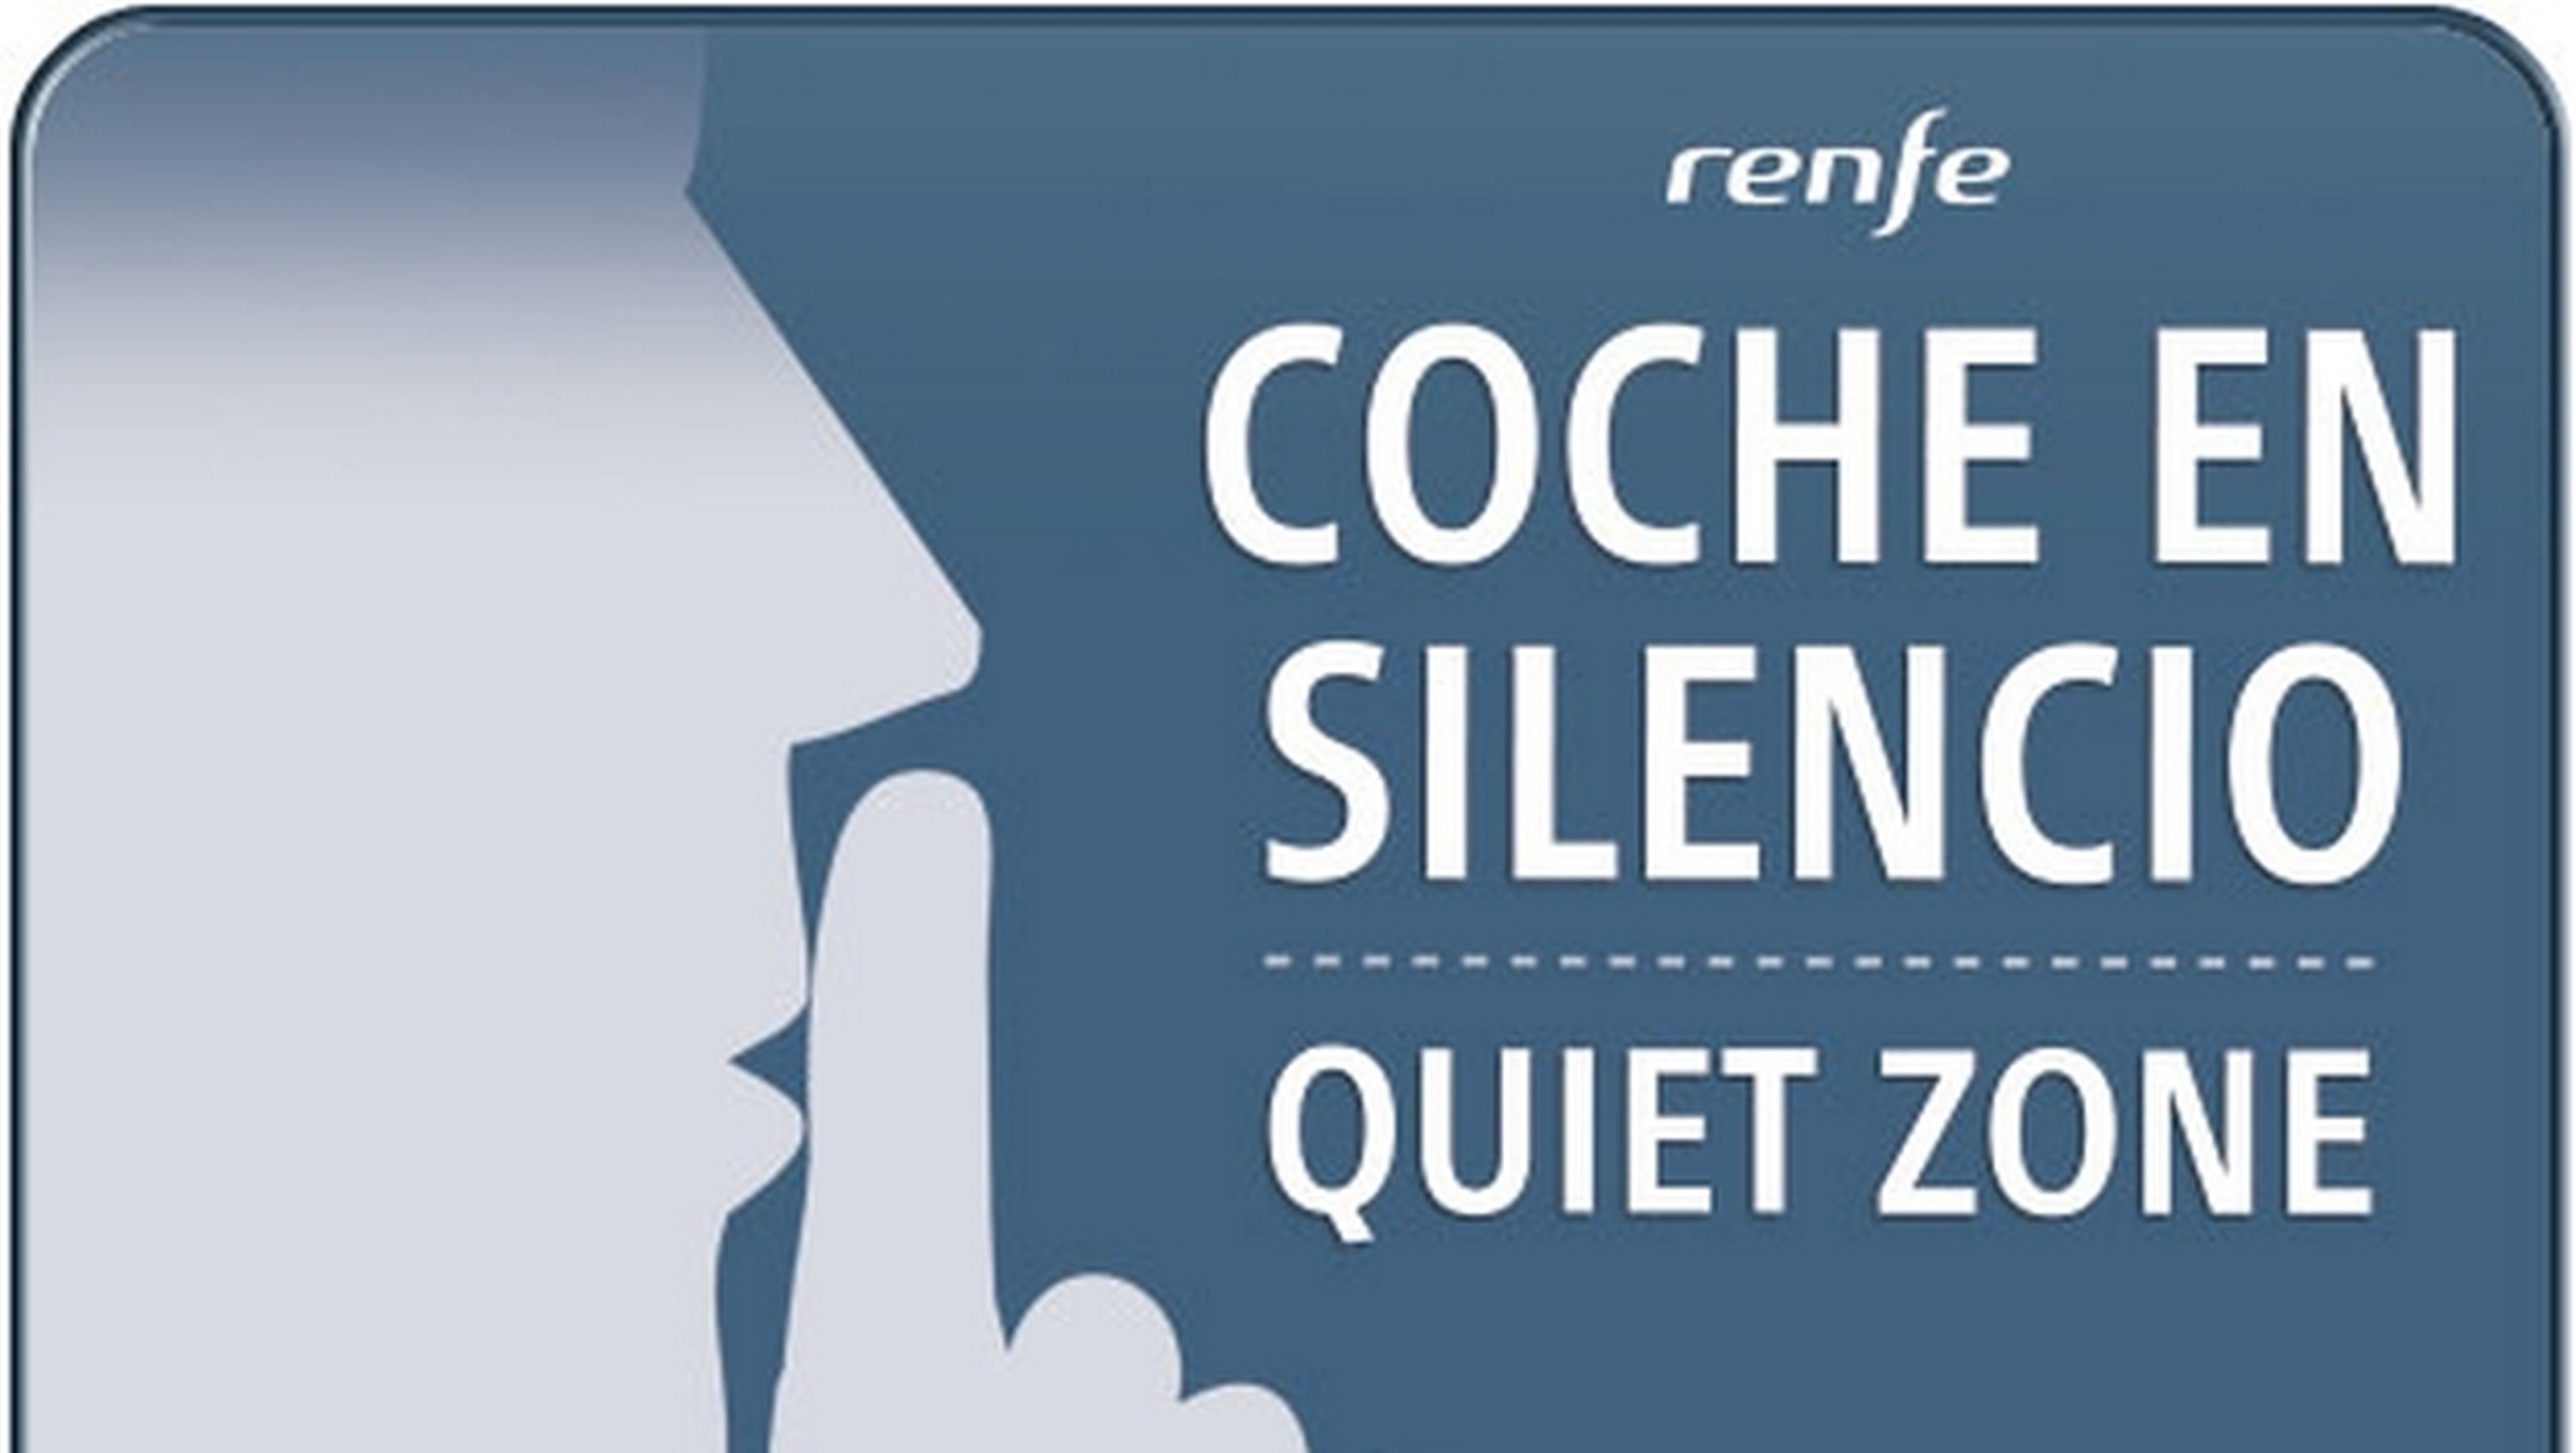 Los Coches en Silencio del AVE se estrenan hoy, por parte de Renfe. Unos vagones en donde no puedes hacer ruido ni usar el smartphone.